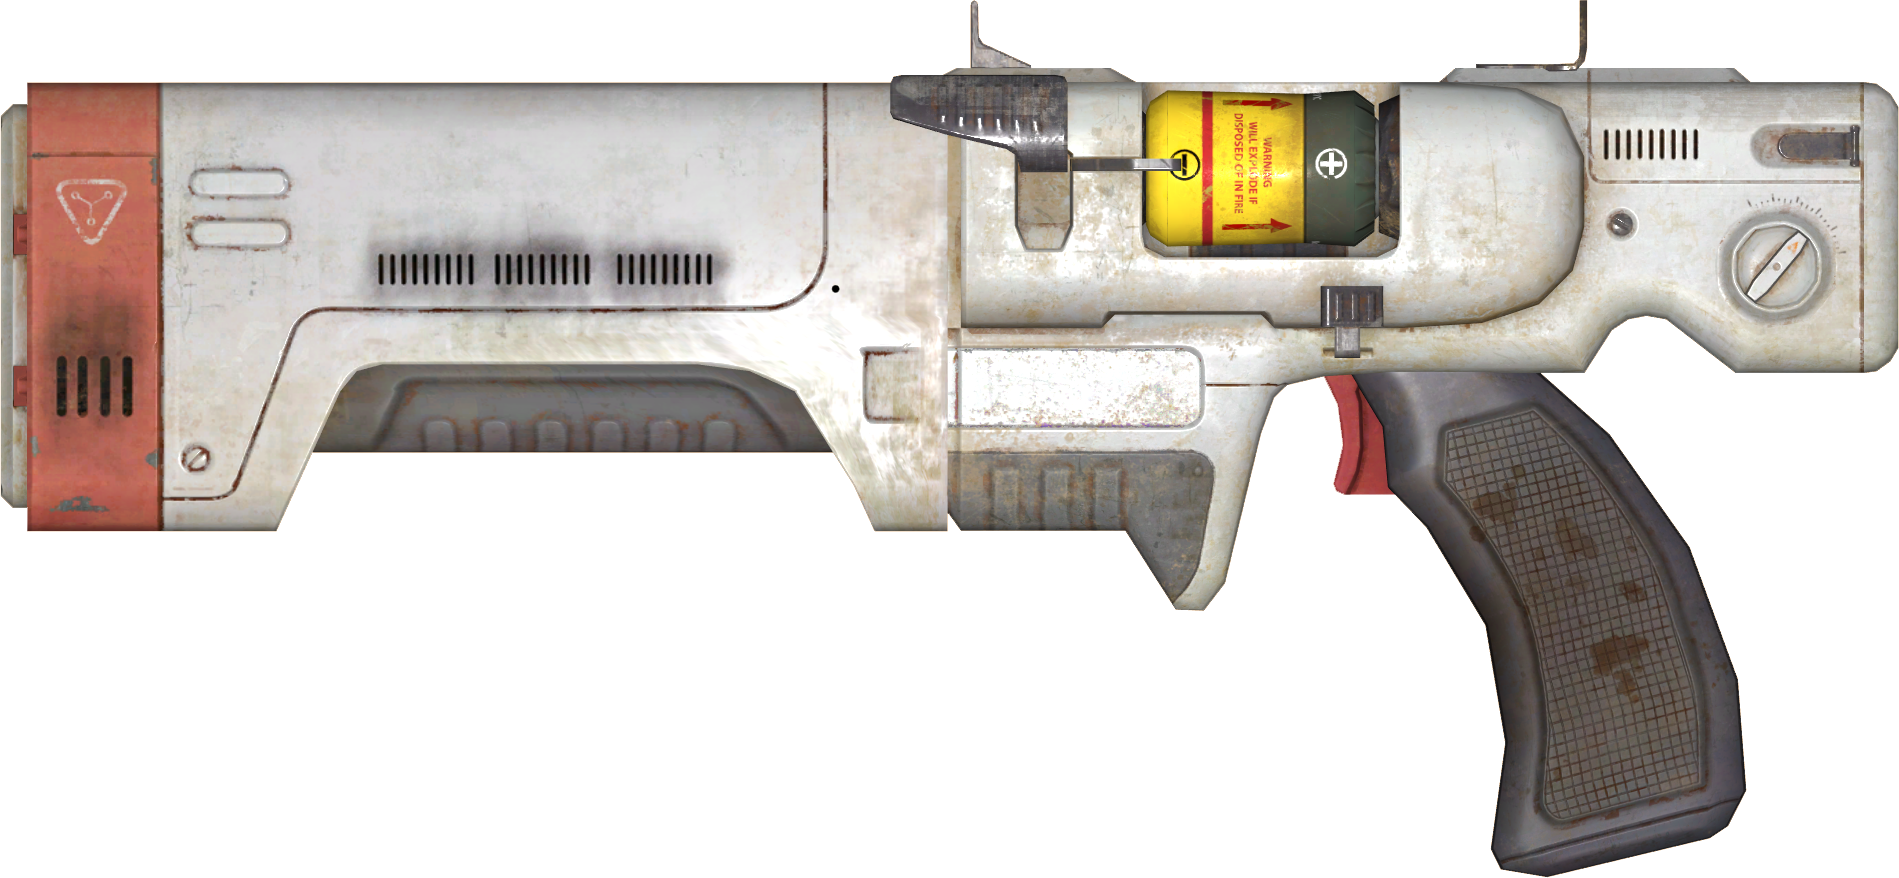 лазерный пистолет из fallout 4 фото 18